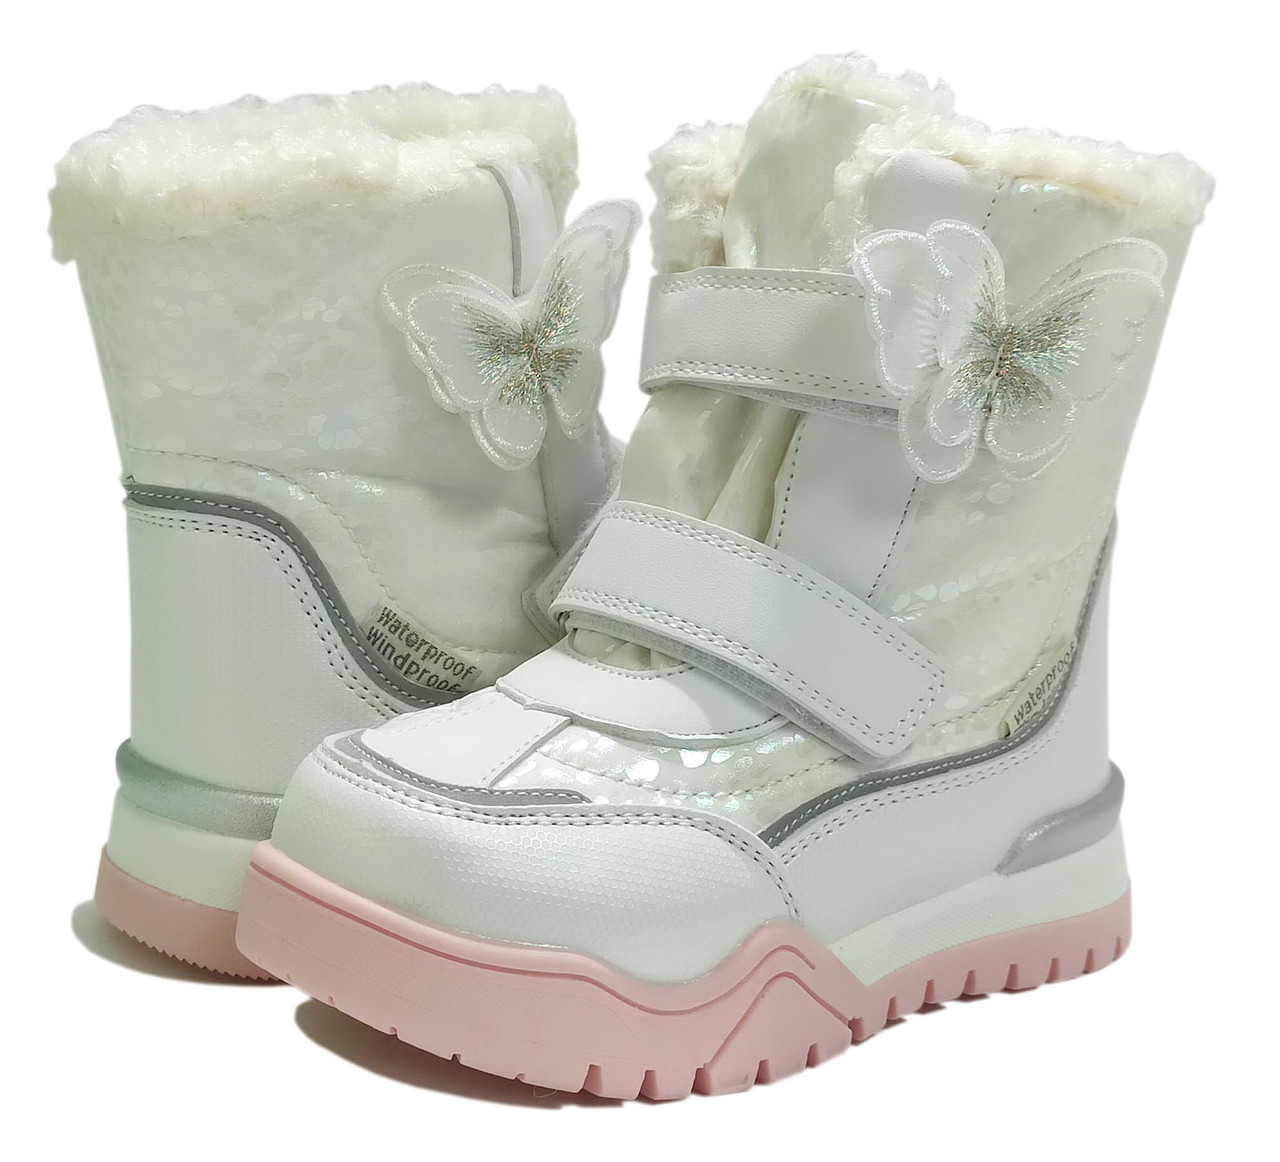 Дитячі зимові черевики для дівчинки на овчині ТОМ М 7675F білі. розміри 26